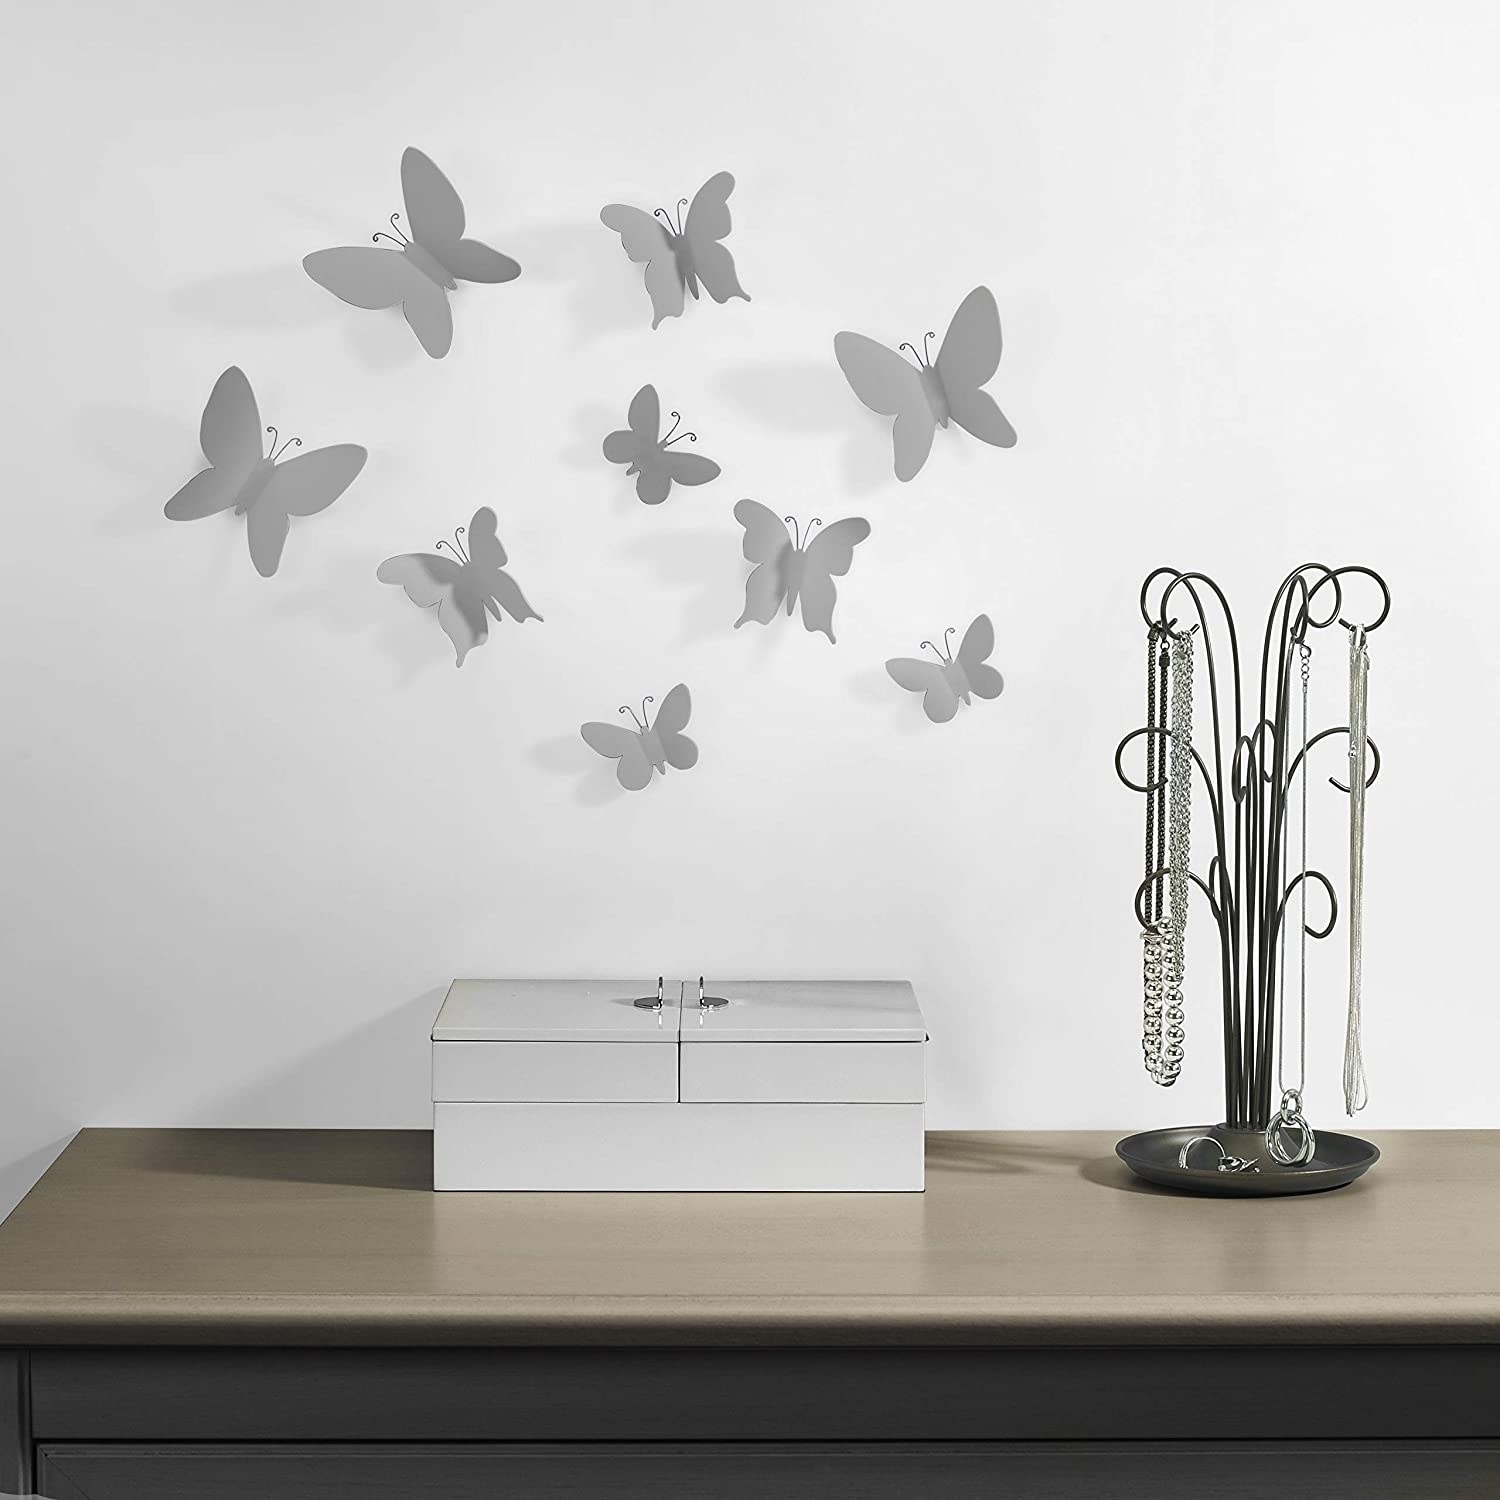 Conjunto de 9 mariposas decorativas para pared